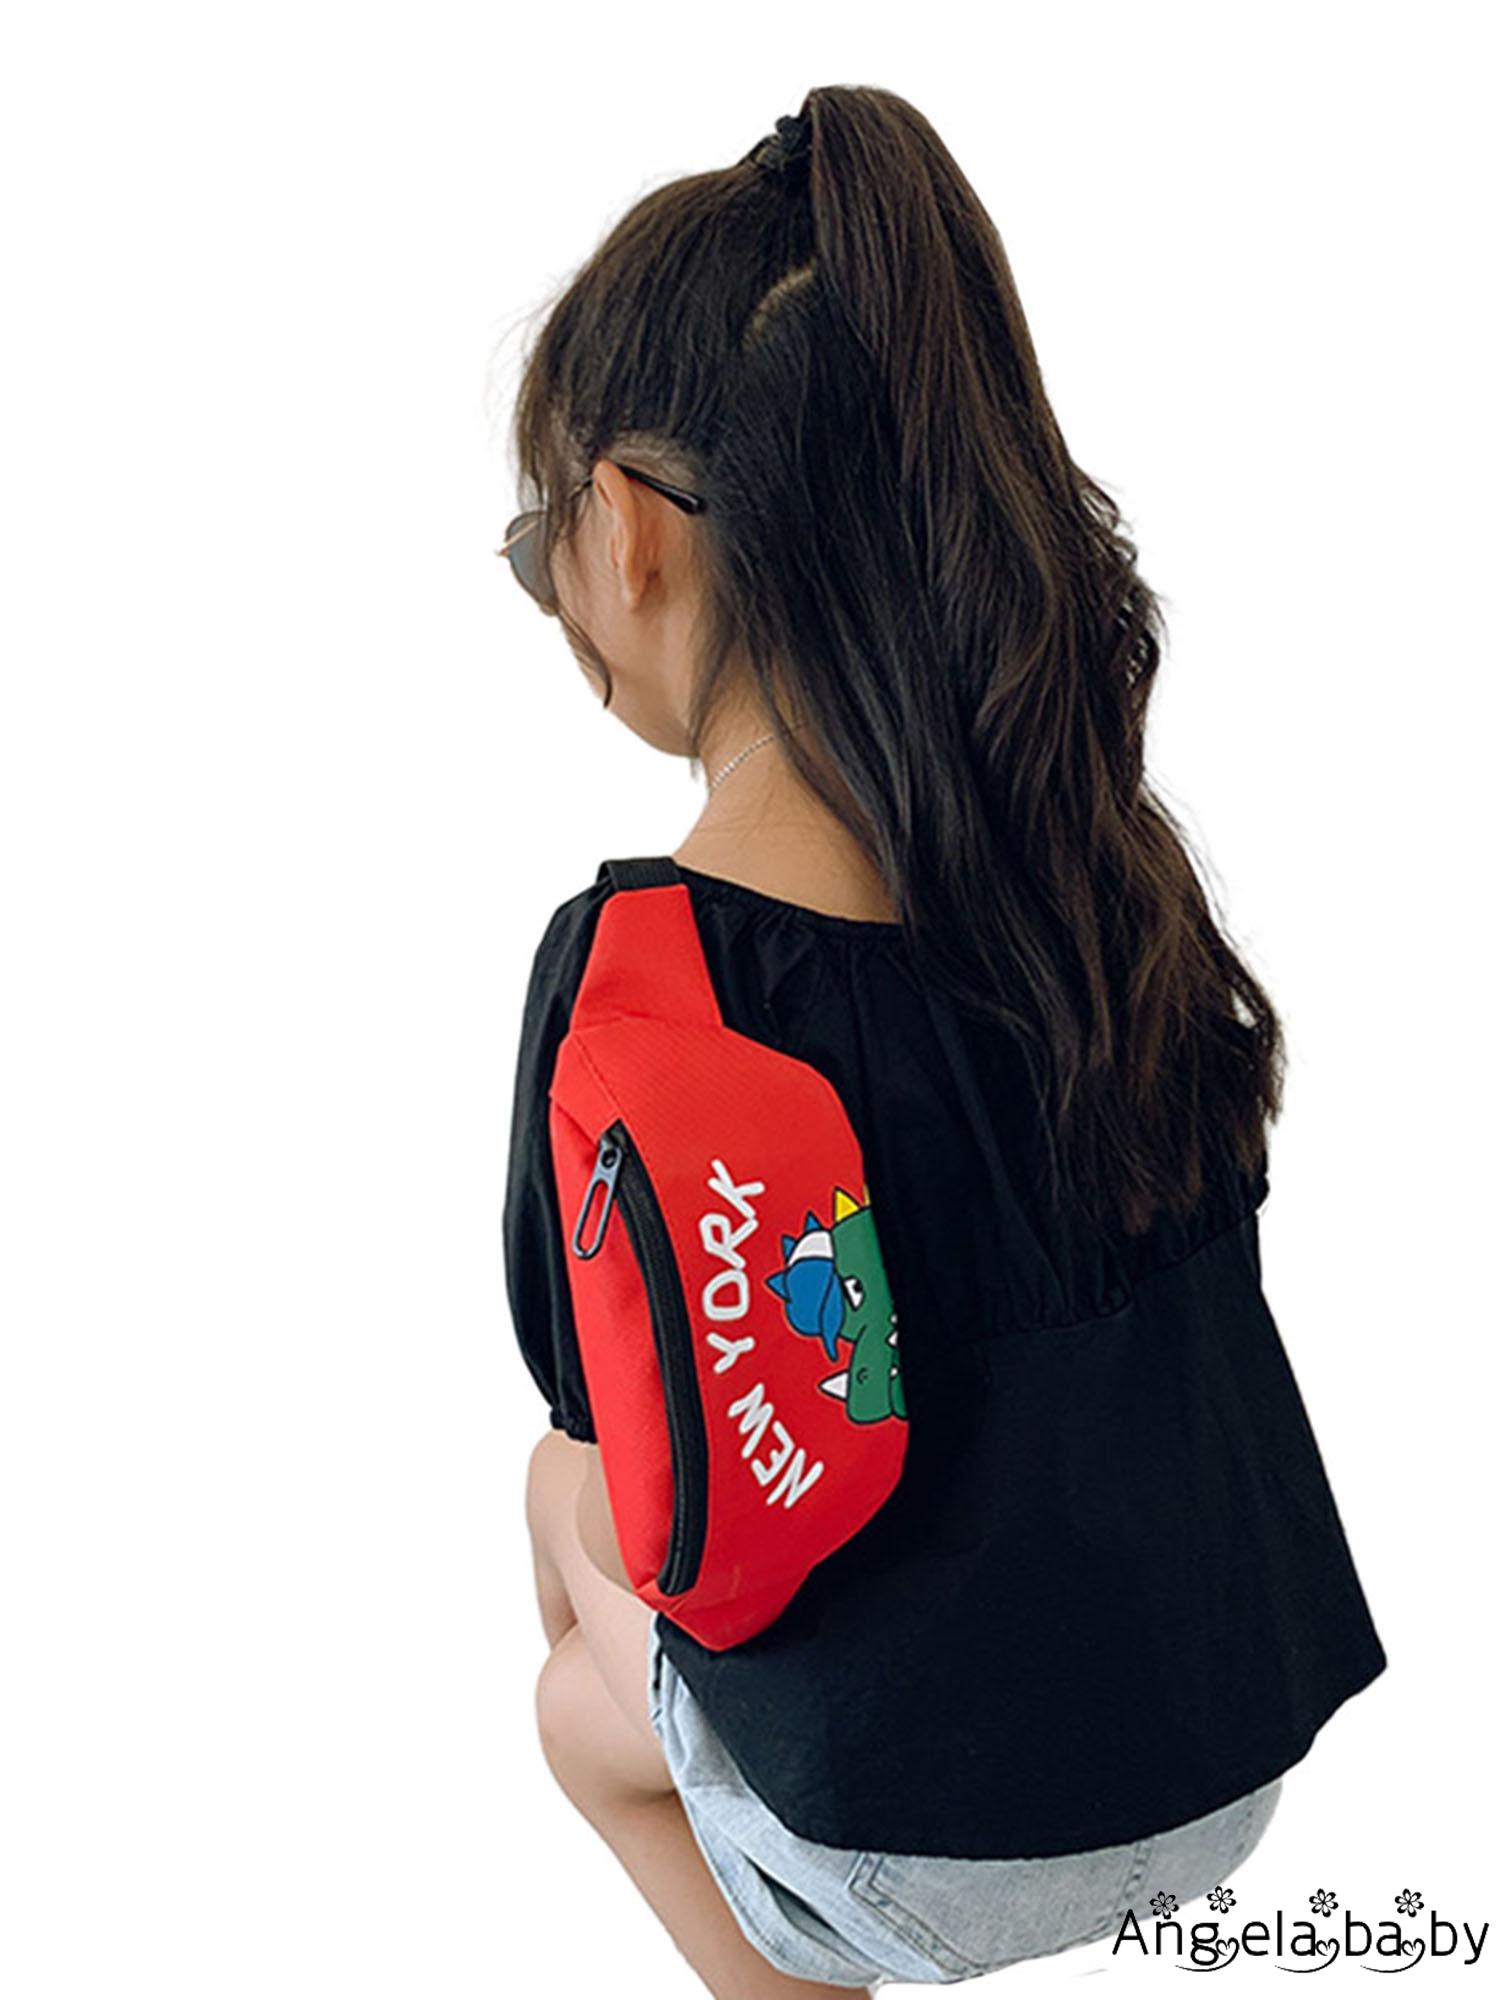 Túi đeo chéo in họa tiết hoạt hình khủng long dễ thương cho bé